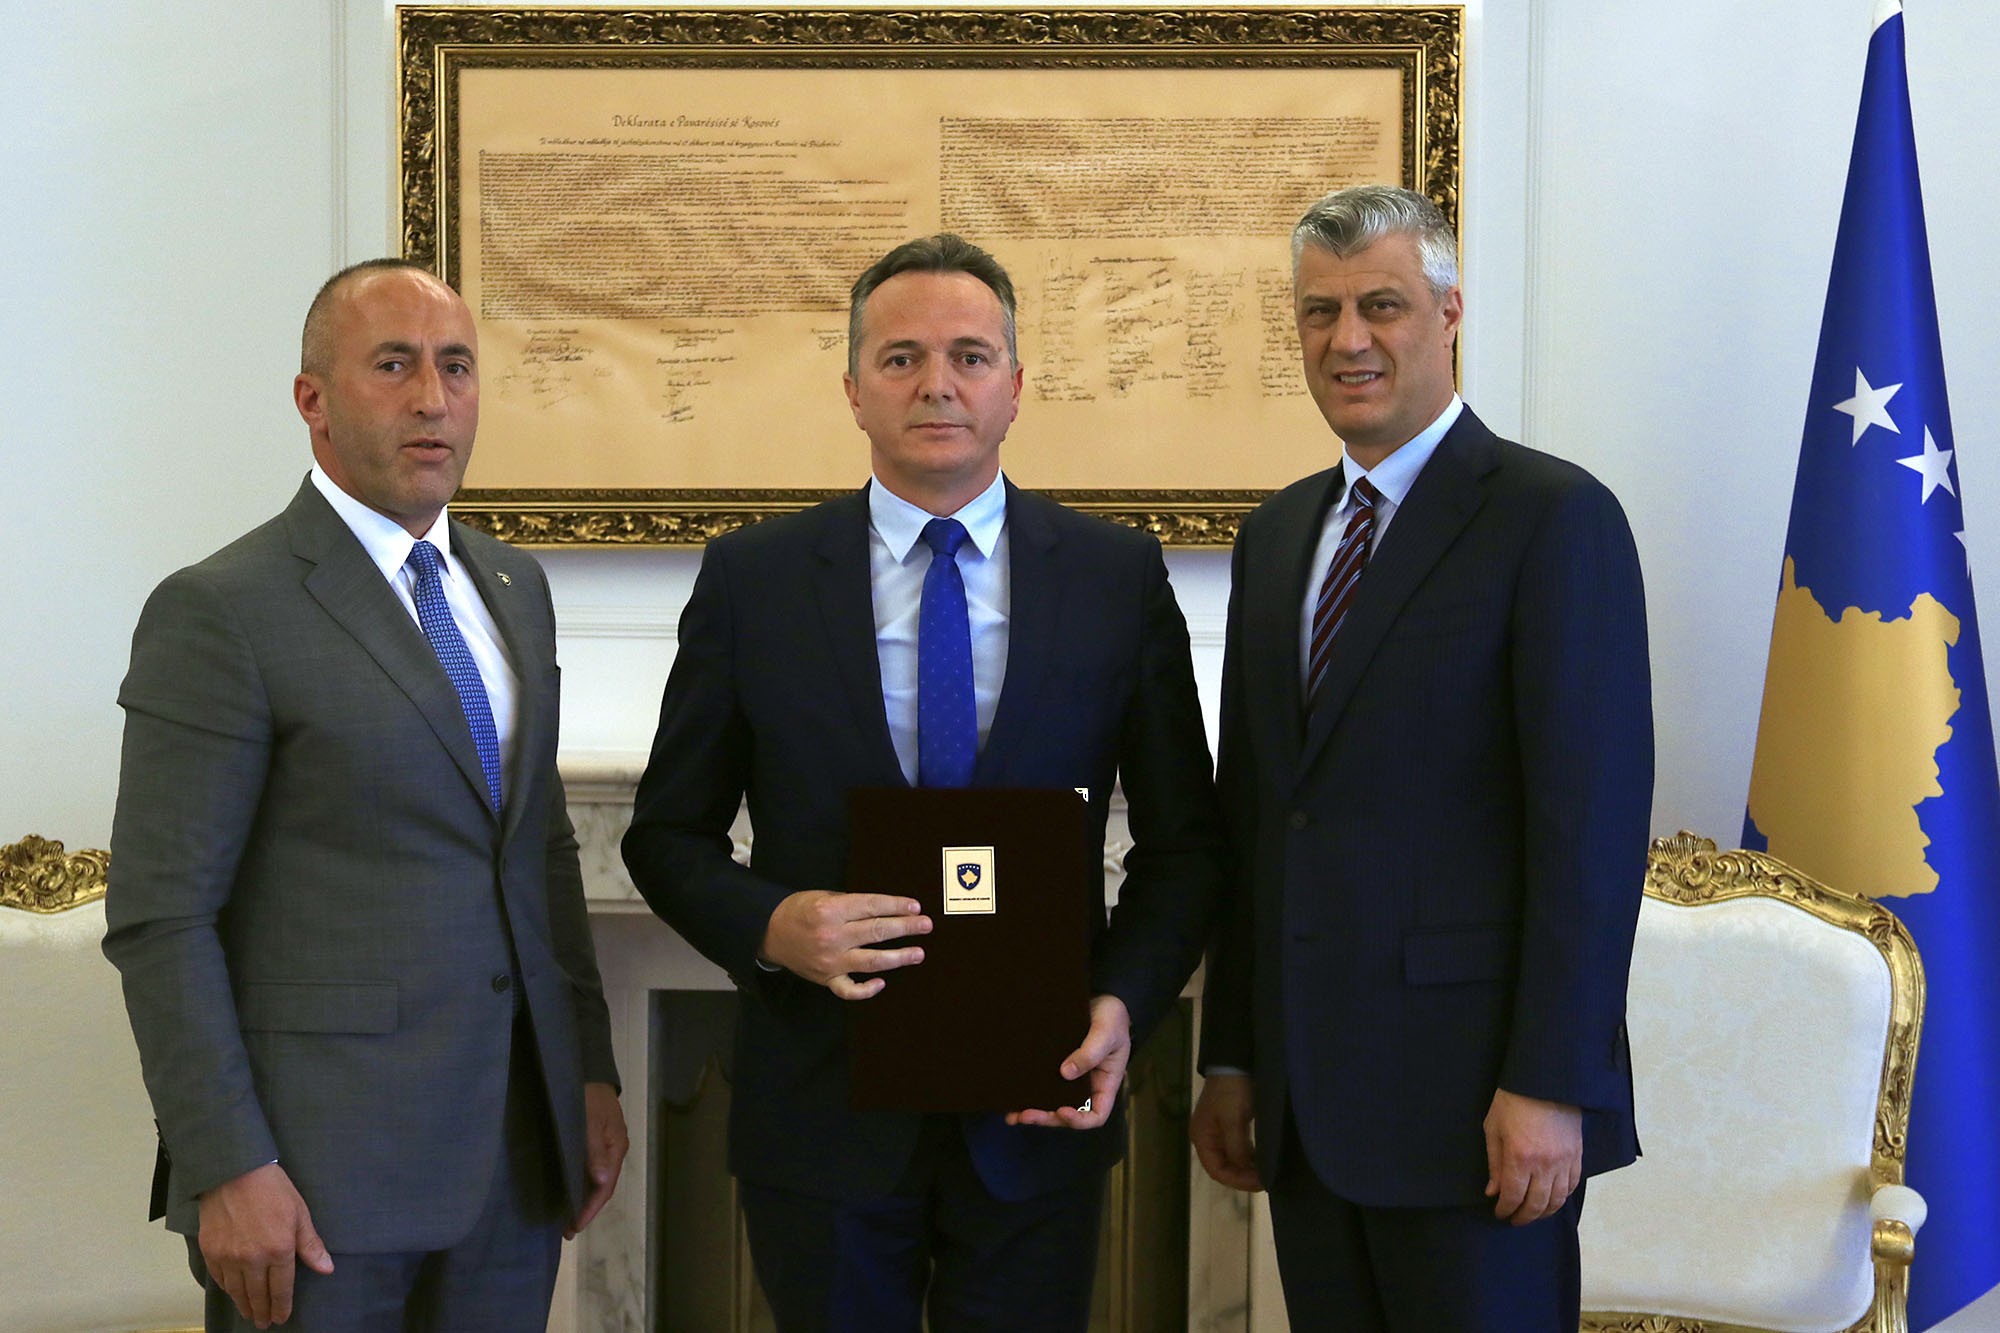 Shpend Maxhuni emërohet Drejtor i Agjencisë së Kosovës për Inteligjencë